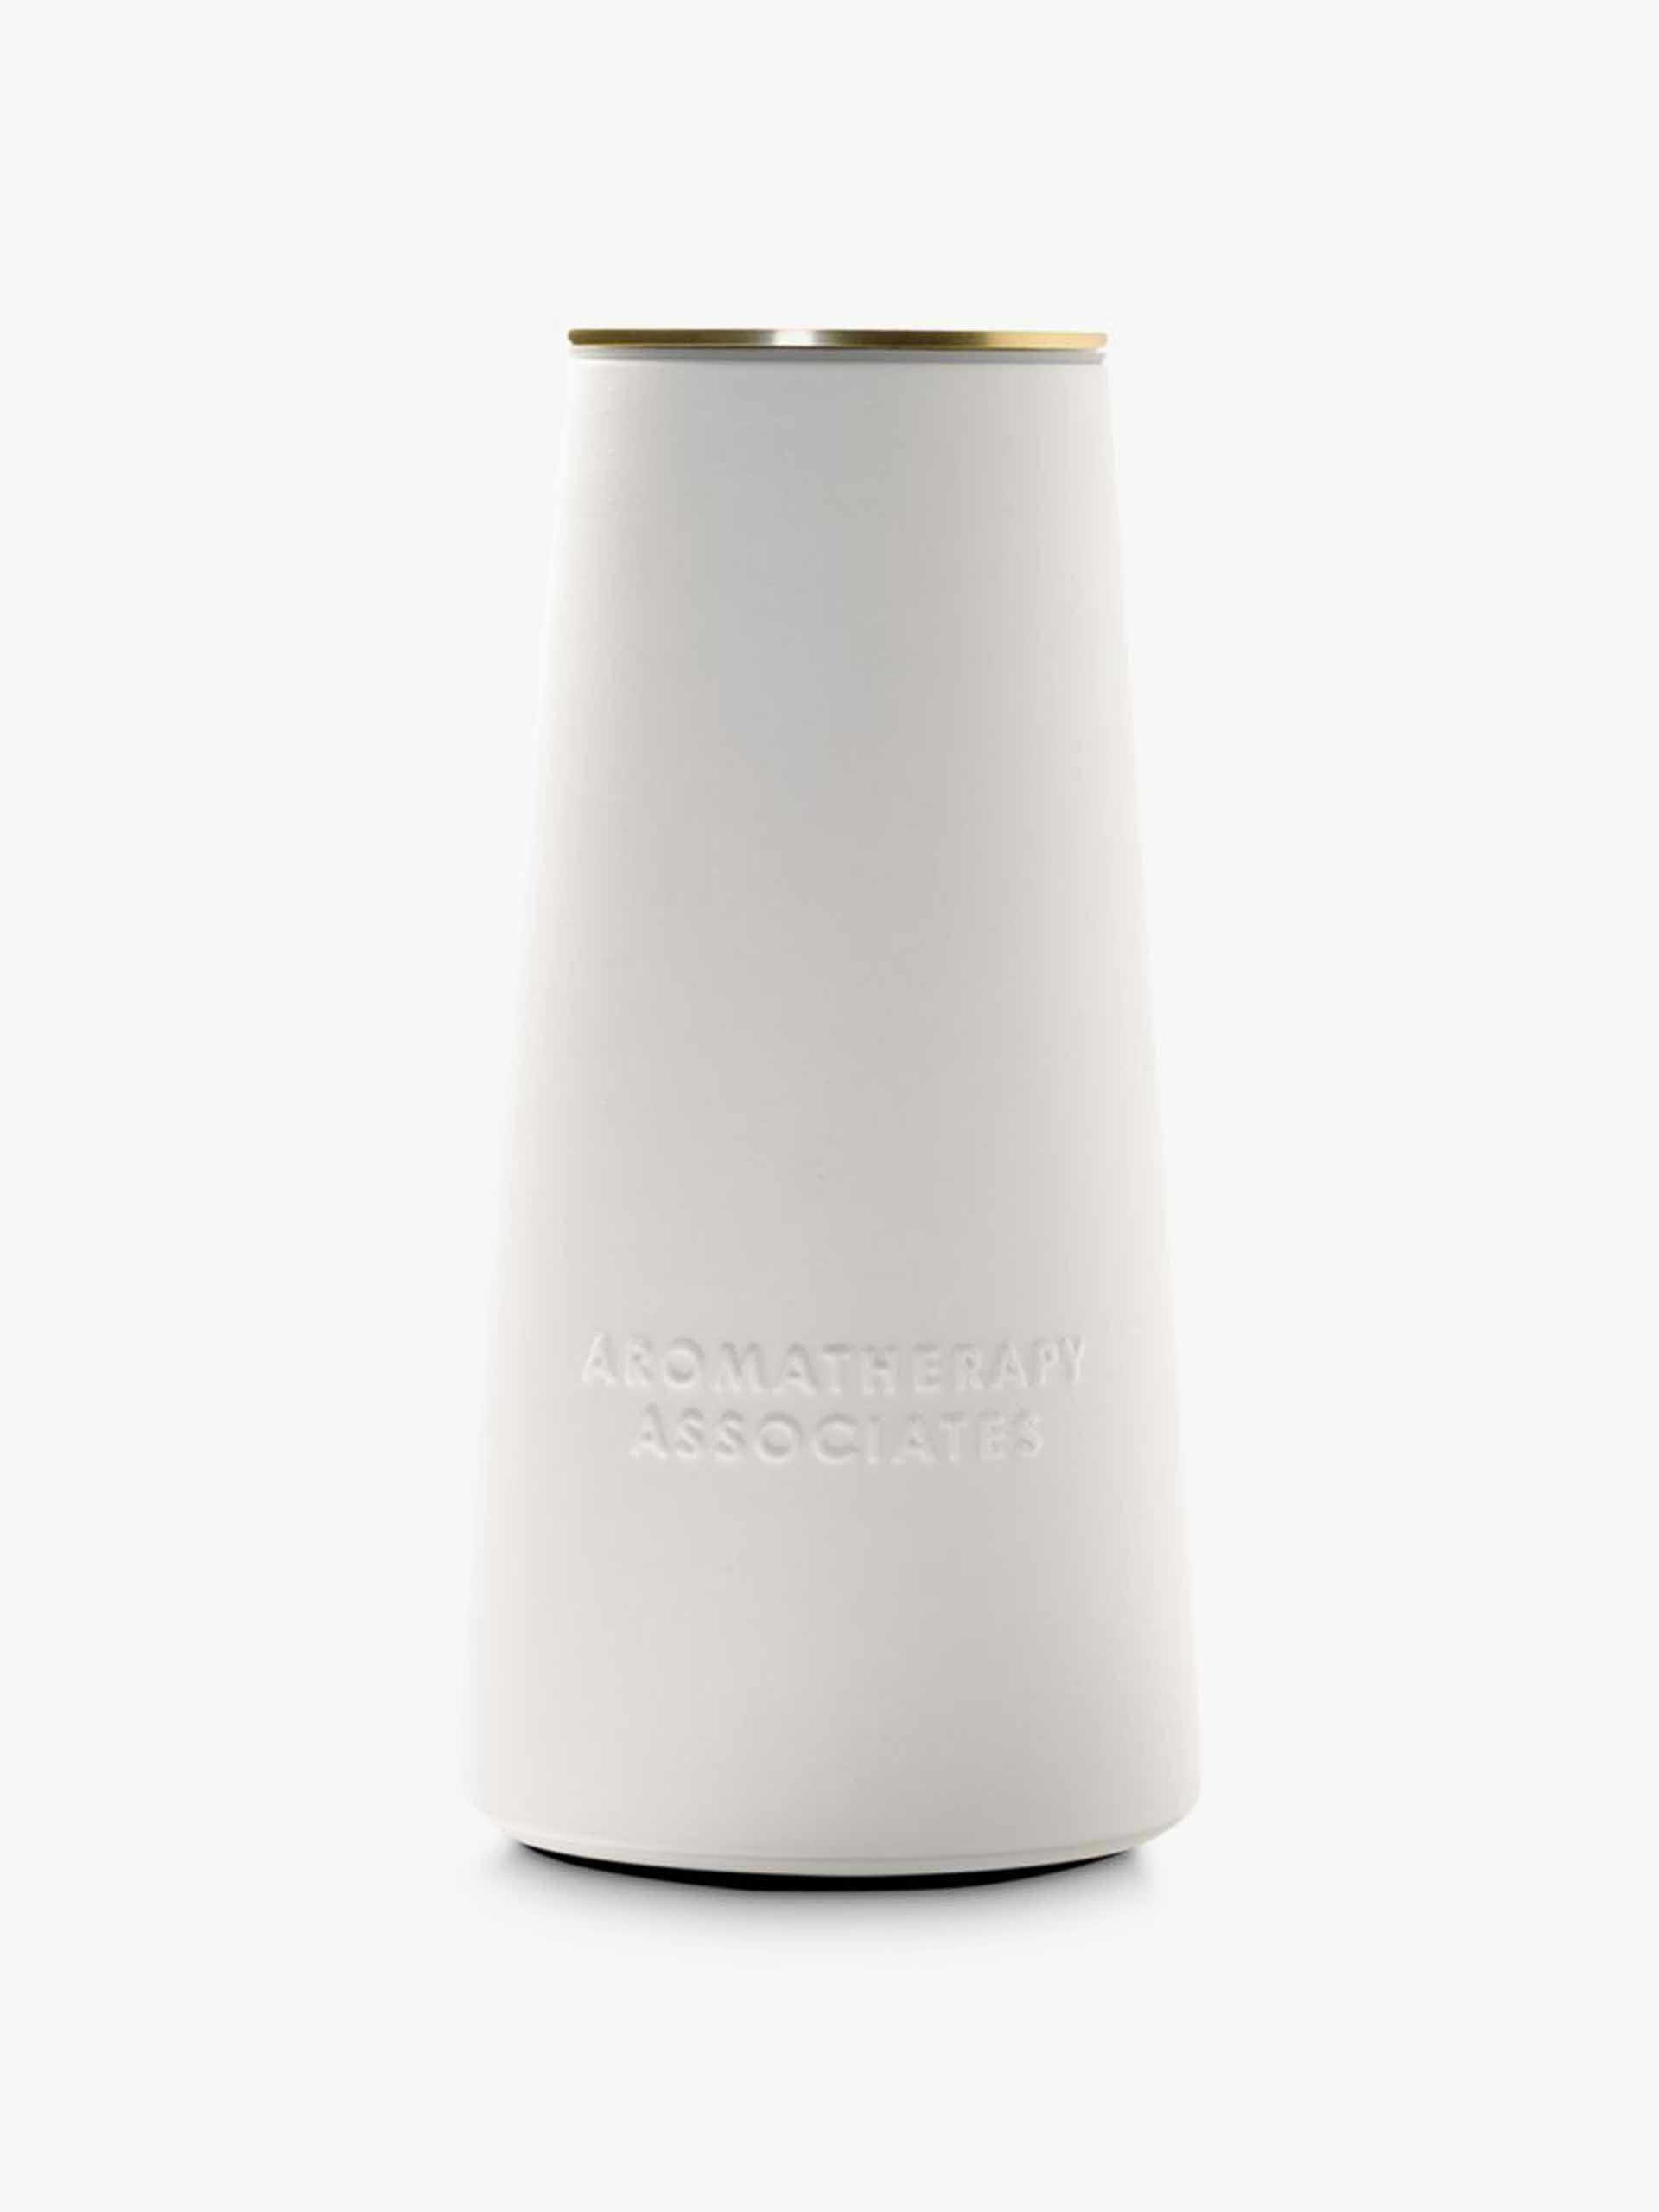 The Atomiser pure essential oil ceramic electric diffuser